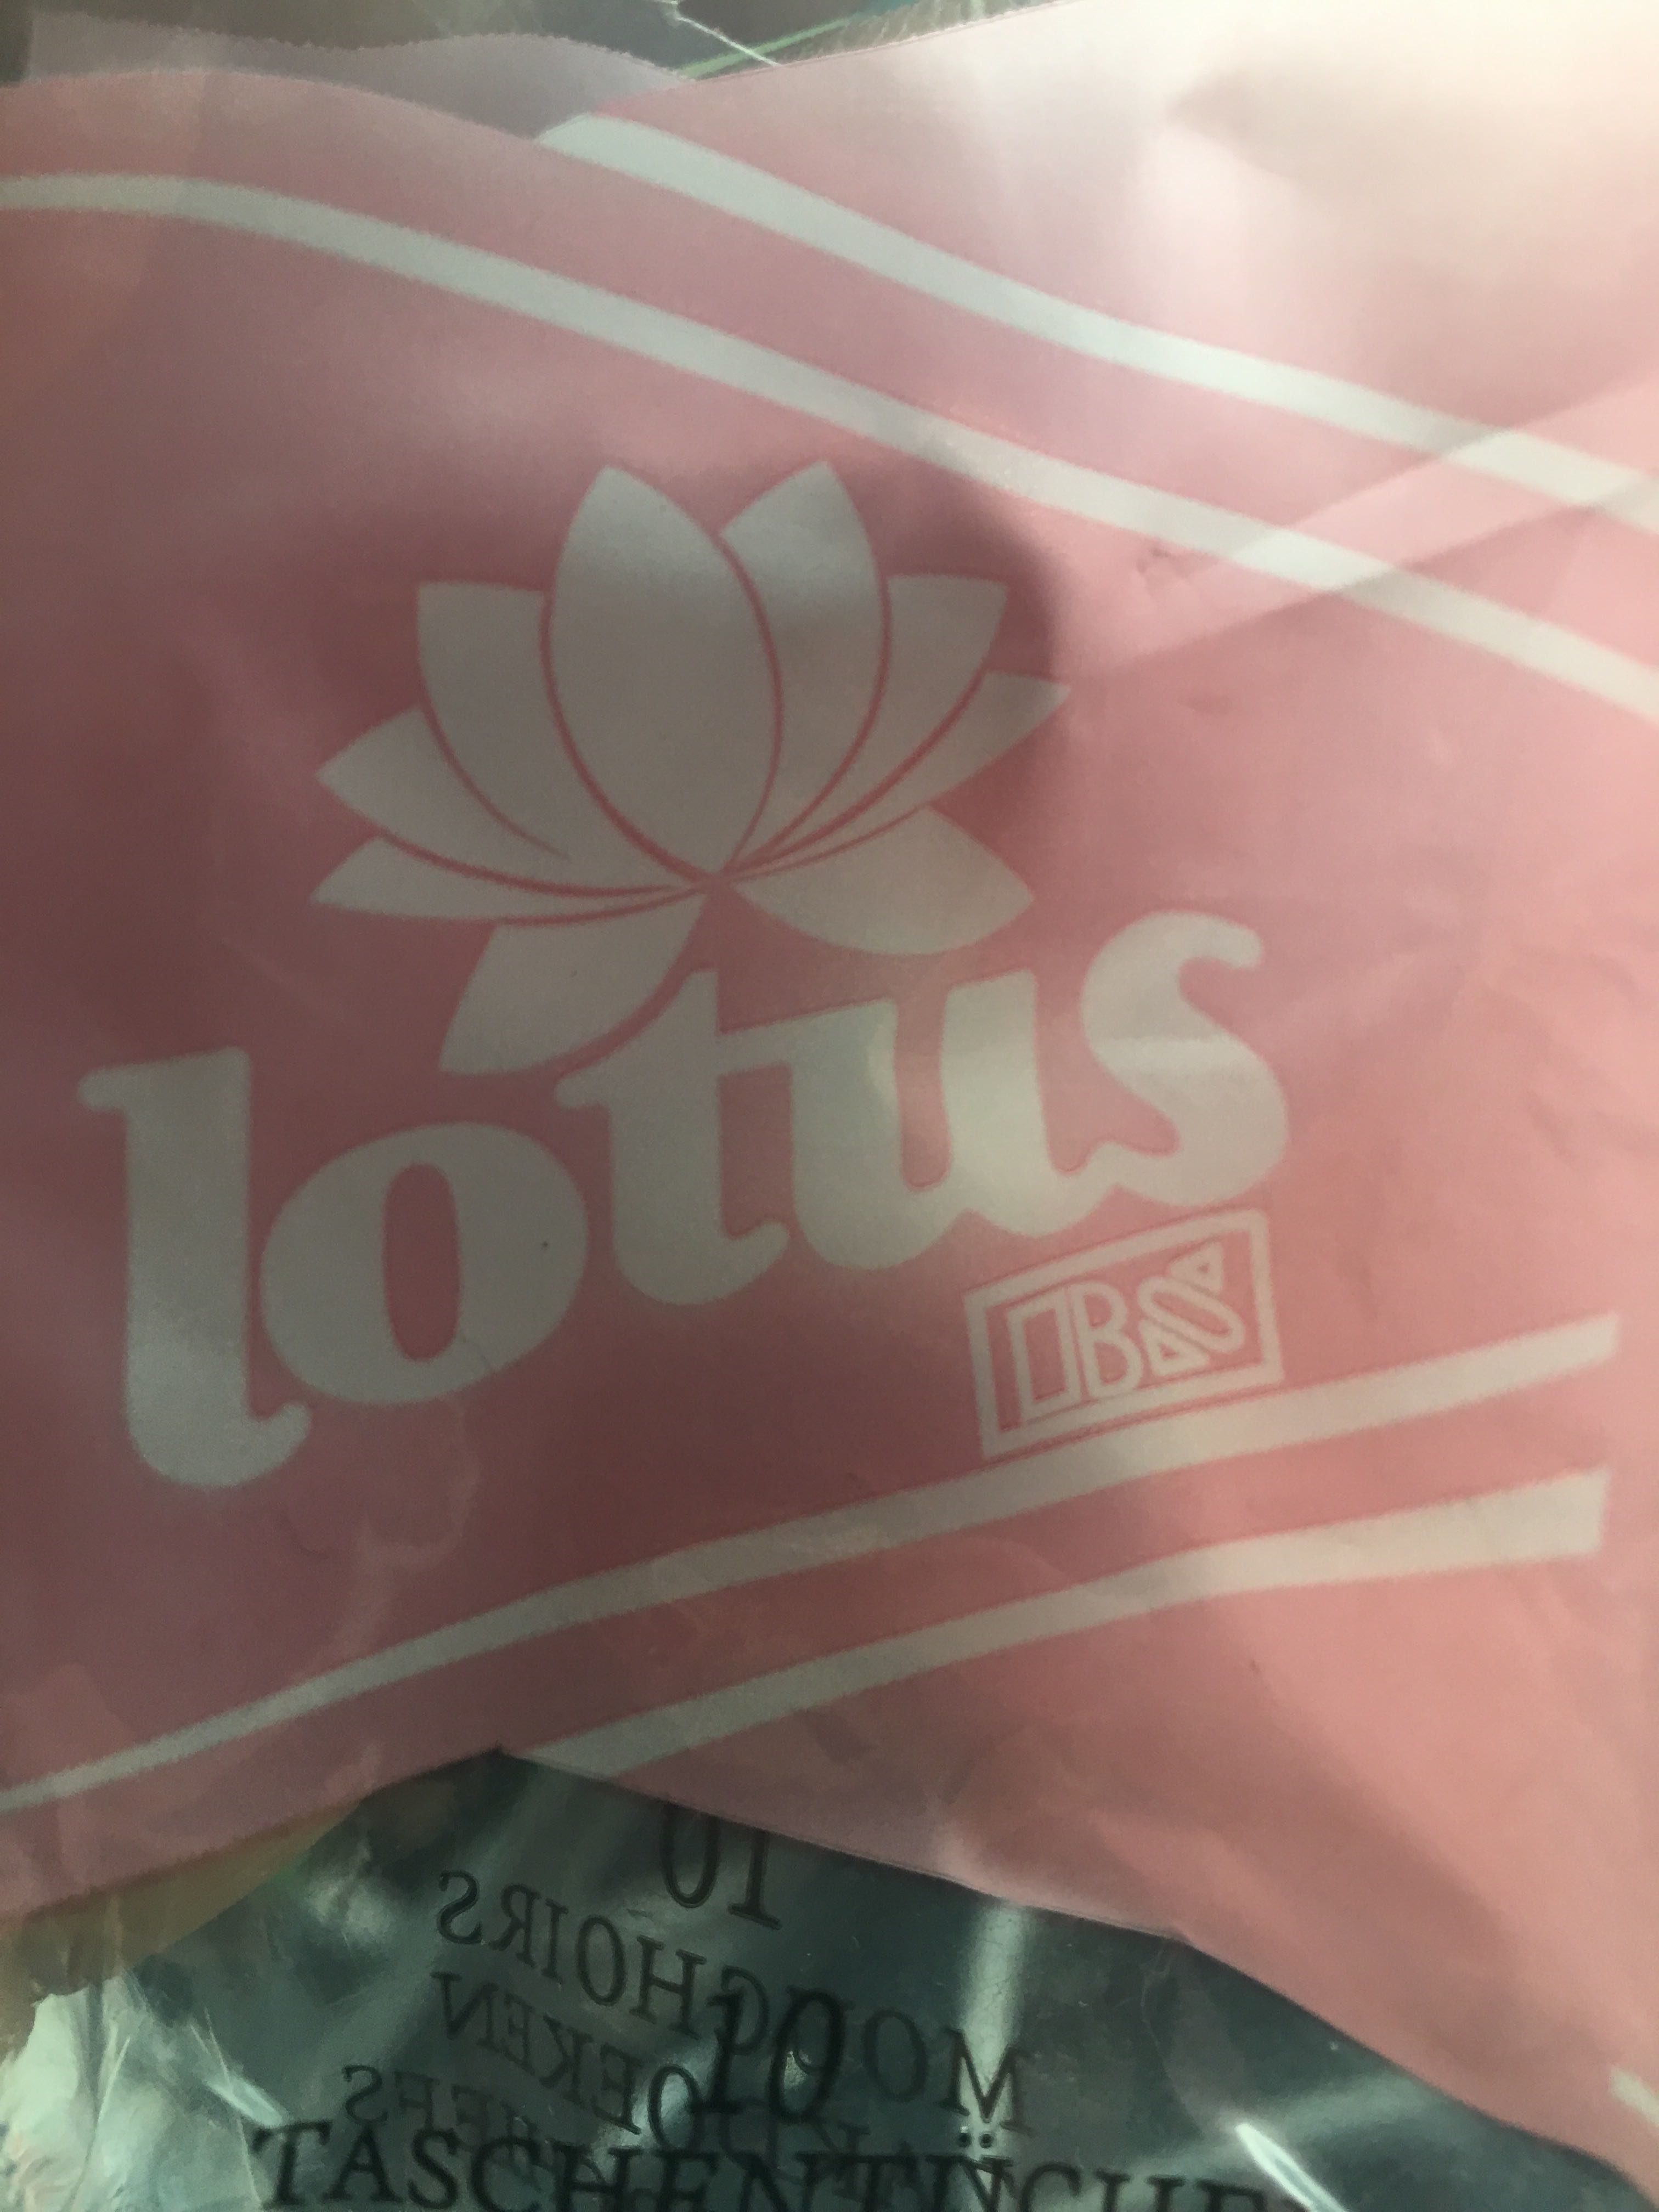 Lotus mouchoir en papier - Product - fr